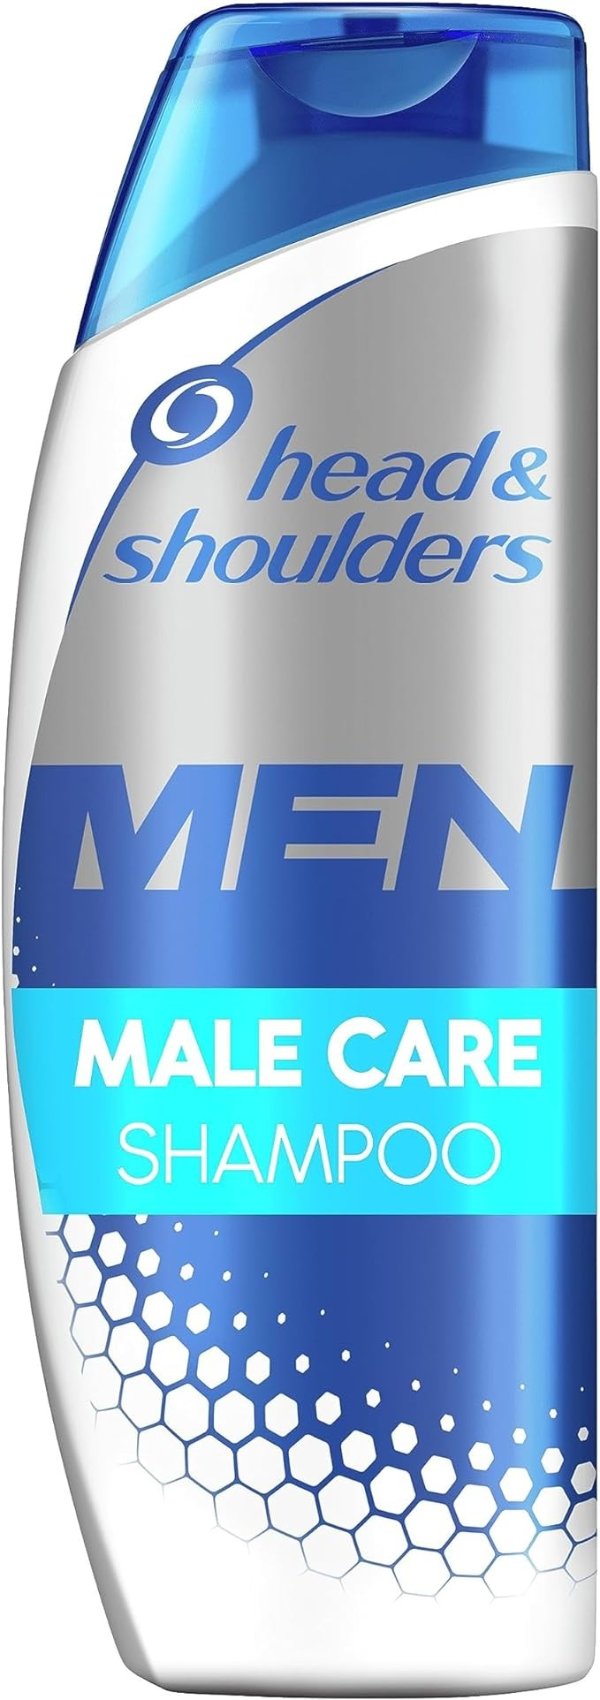 男士护理洗发水 250ml